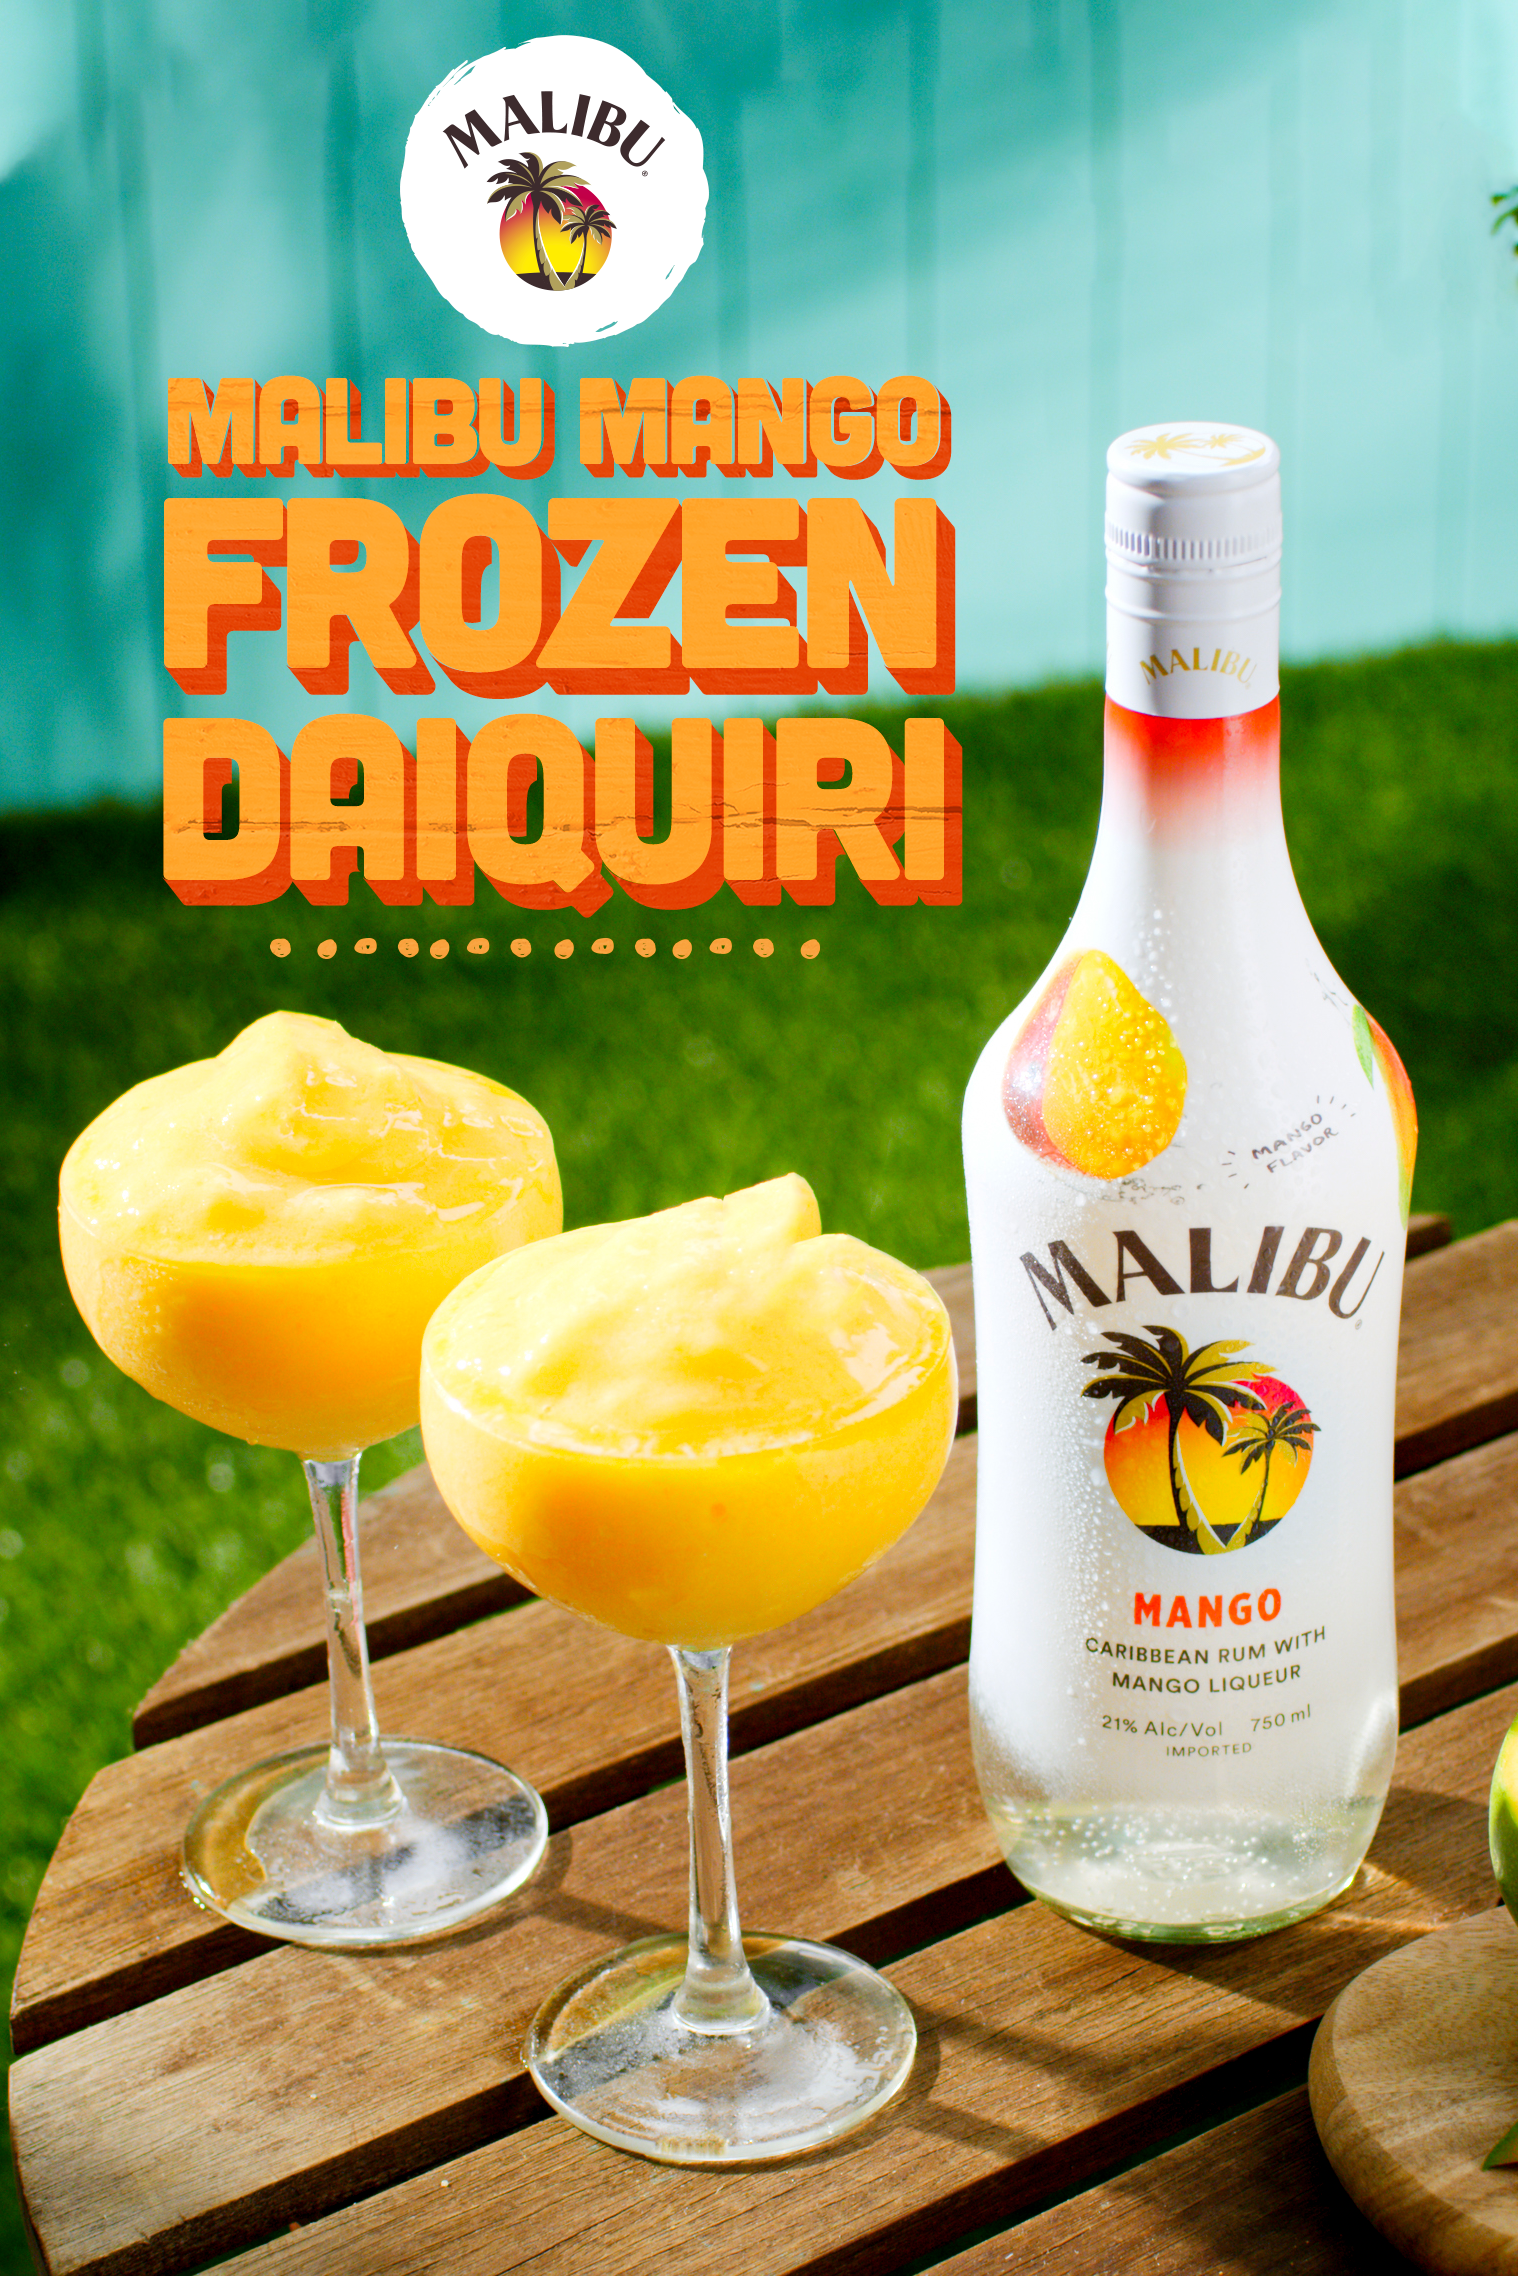 Malibu Mango Frozen Daiquiri